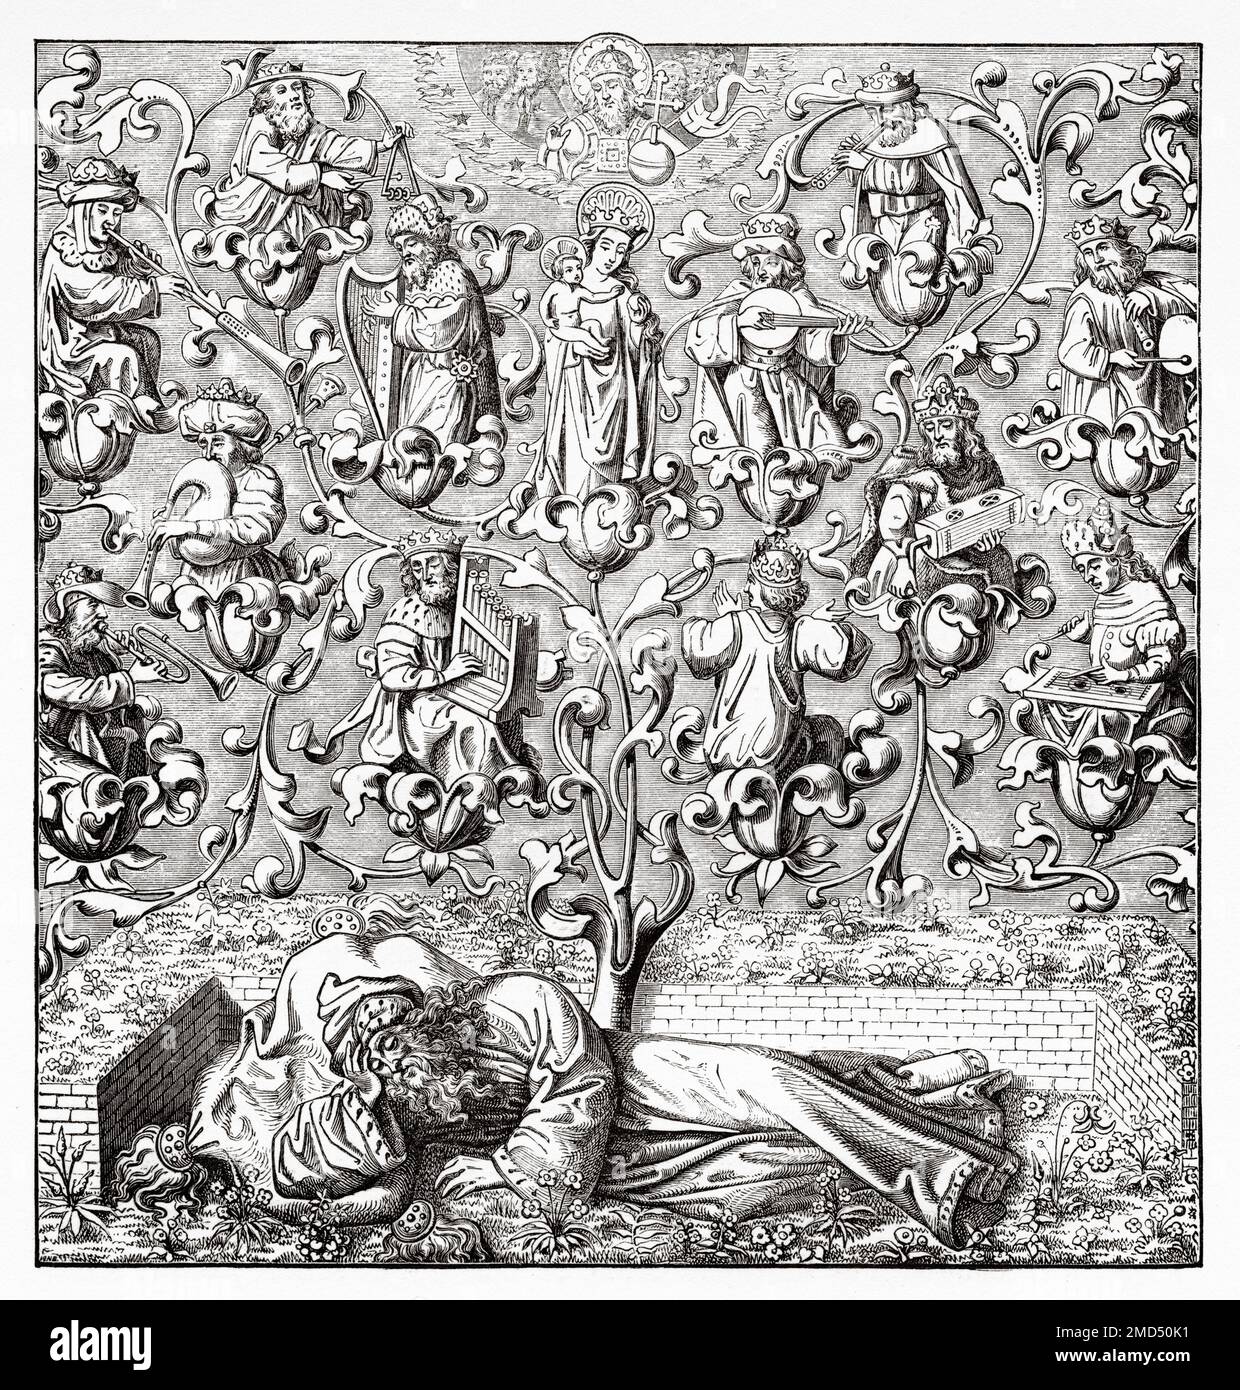 L'arbre de Jesse est une représentation dans l'art des ancêtres de Jésus-Christ, montré dans un arbre arborant qui s'élève de Jesse de Bethléem, le père du roi David. C'est l'utilisation originale de l'arbre généalogique comme représentation schématique d'une généalogie. Les arts du Moyen-âge et à la période de la Renaissance par Paul Lacroix, 1874 Banque D'Images